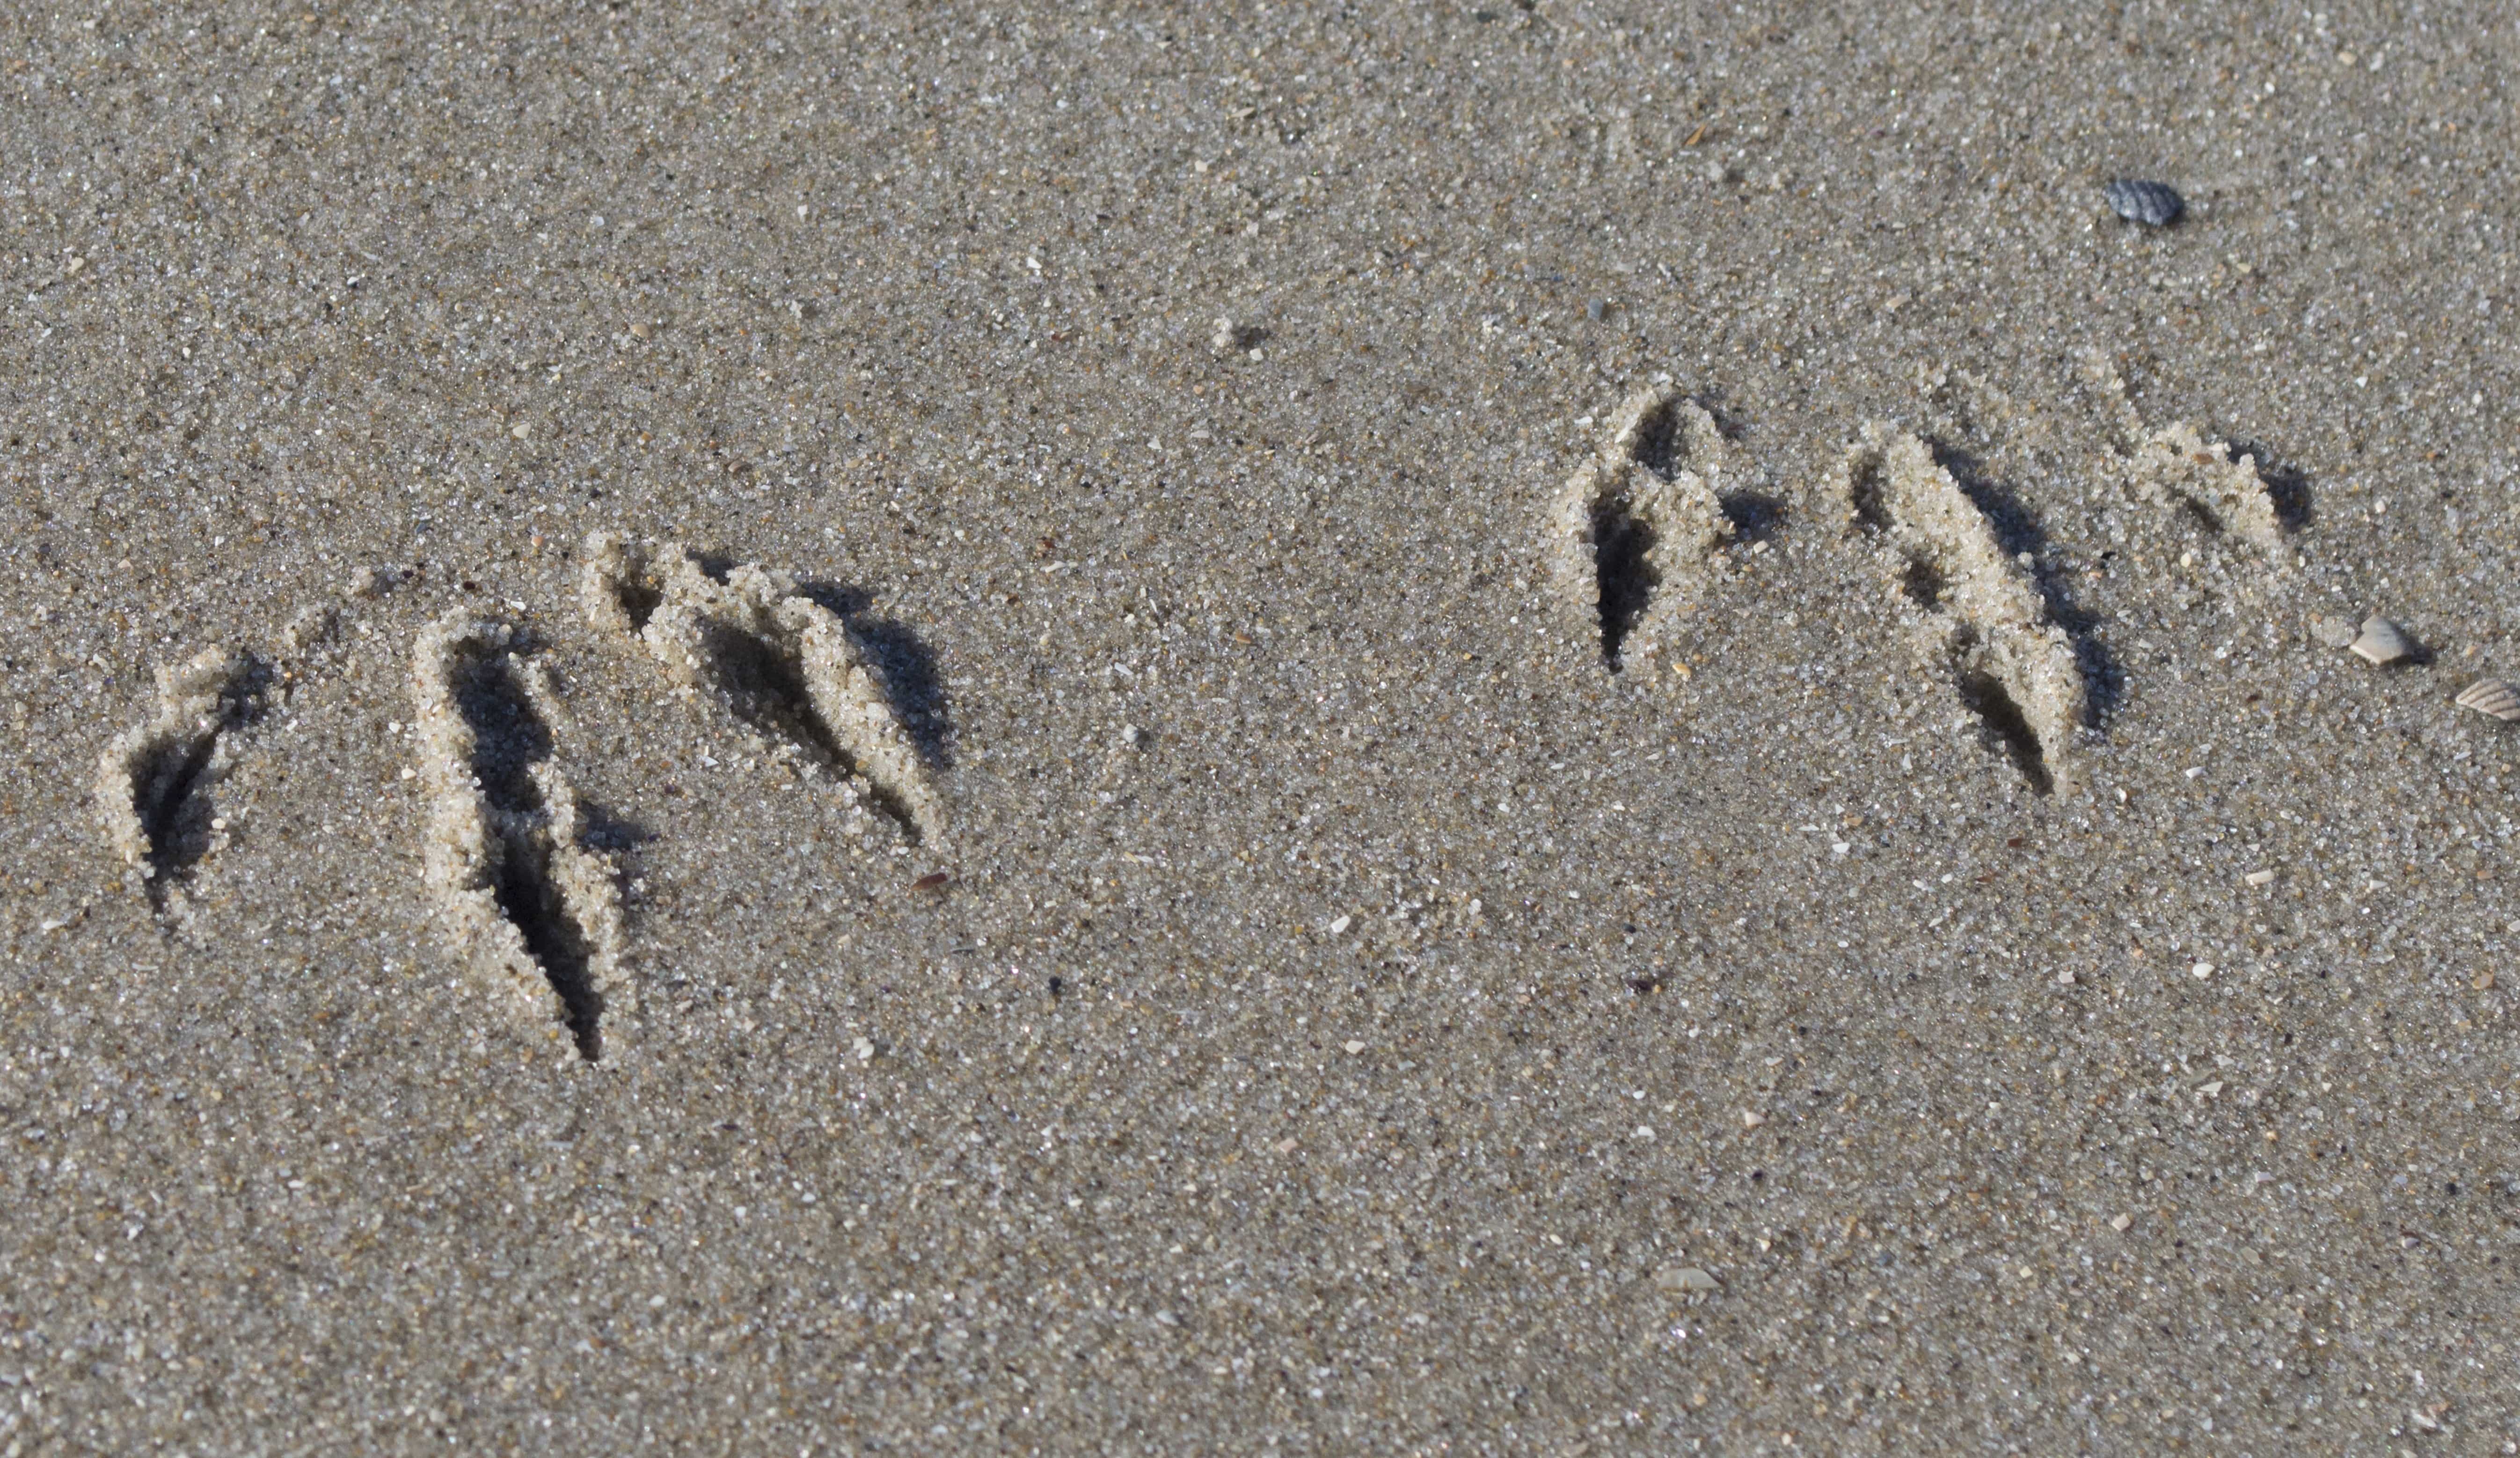 Текст следы на песке. Следы птиц на песке. Следы животных на песке. Следы страуса. Следы Цапли на песке.